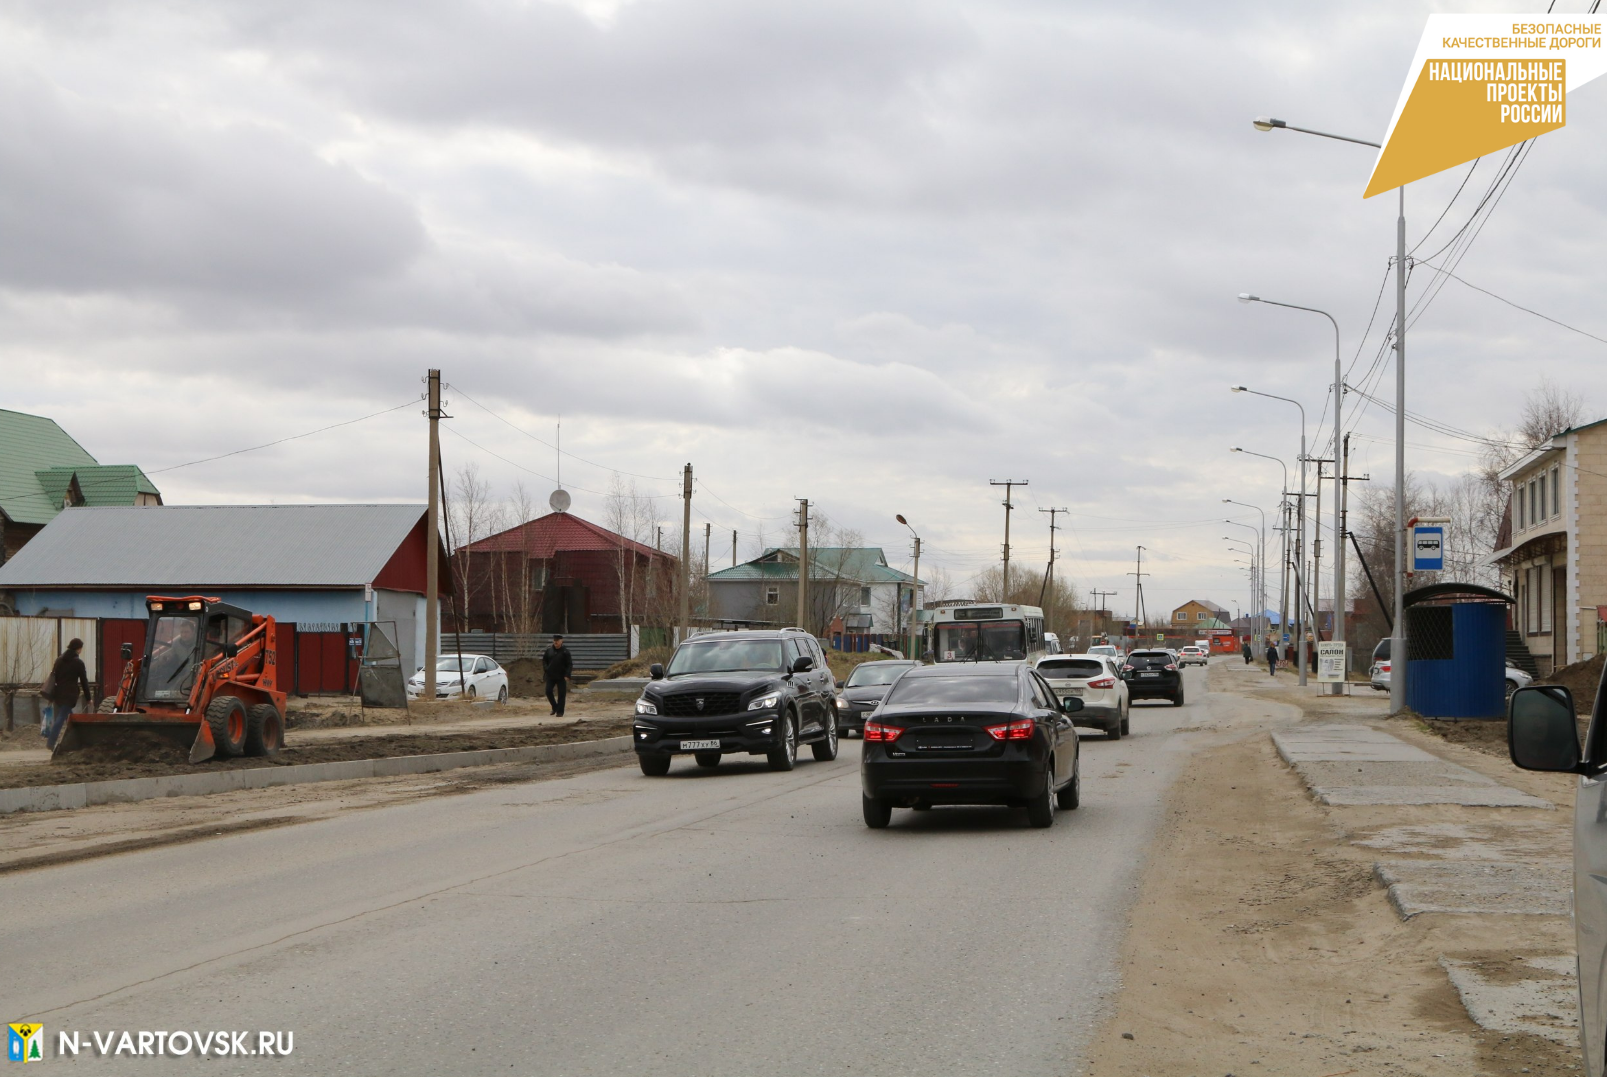 В Нижневартовске по нацпроекту отремонтируют одну из первых городских улиц - Школьную